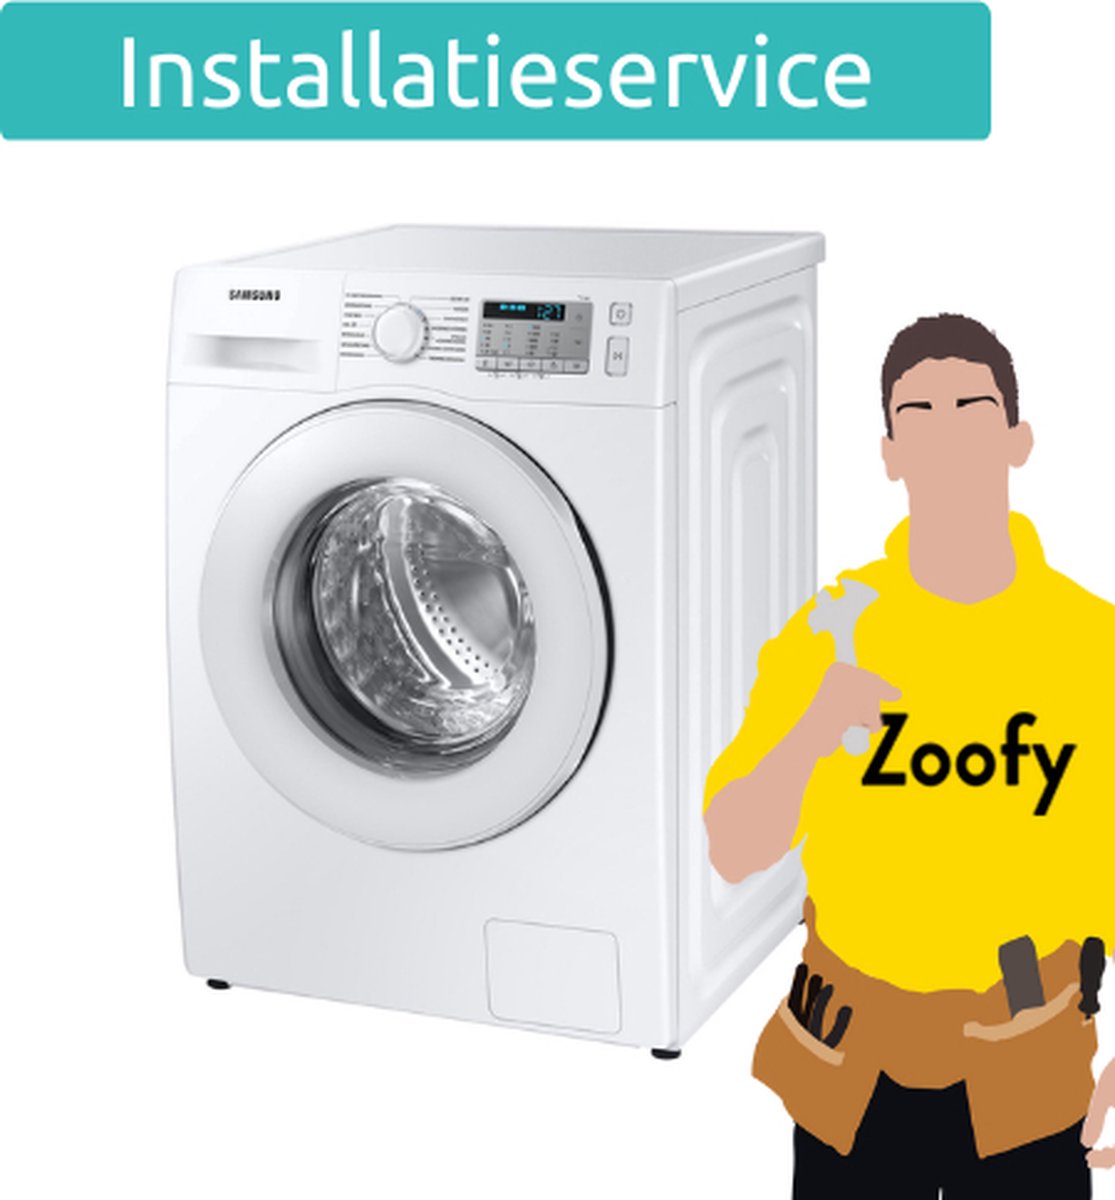 Wasmachine aansluiten (met kraan) - Door Zoofy in samenwerking met bol.com  -... | bol.com